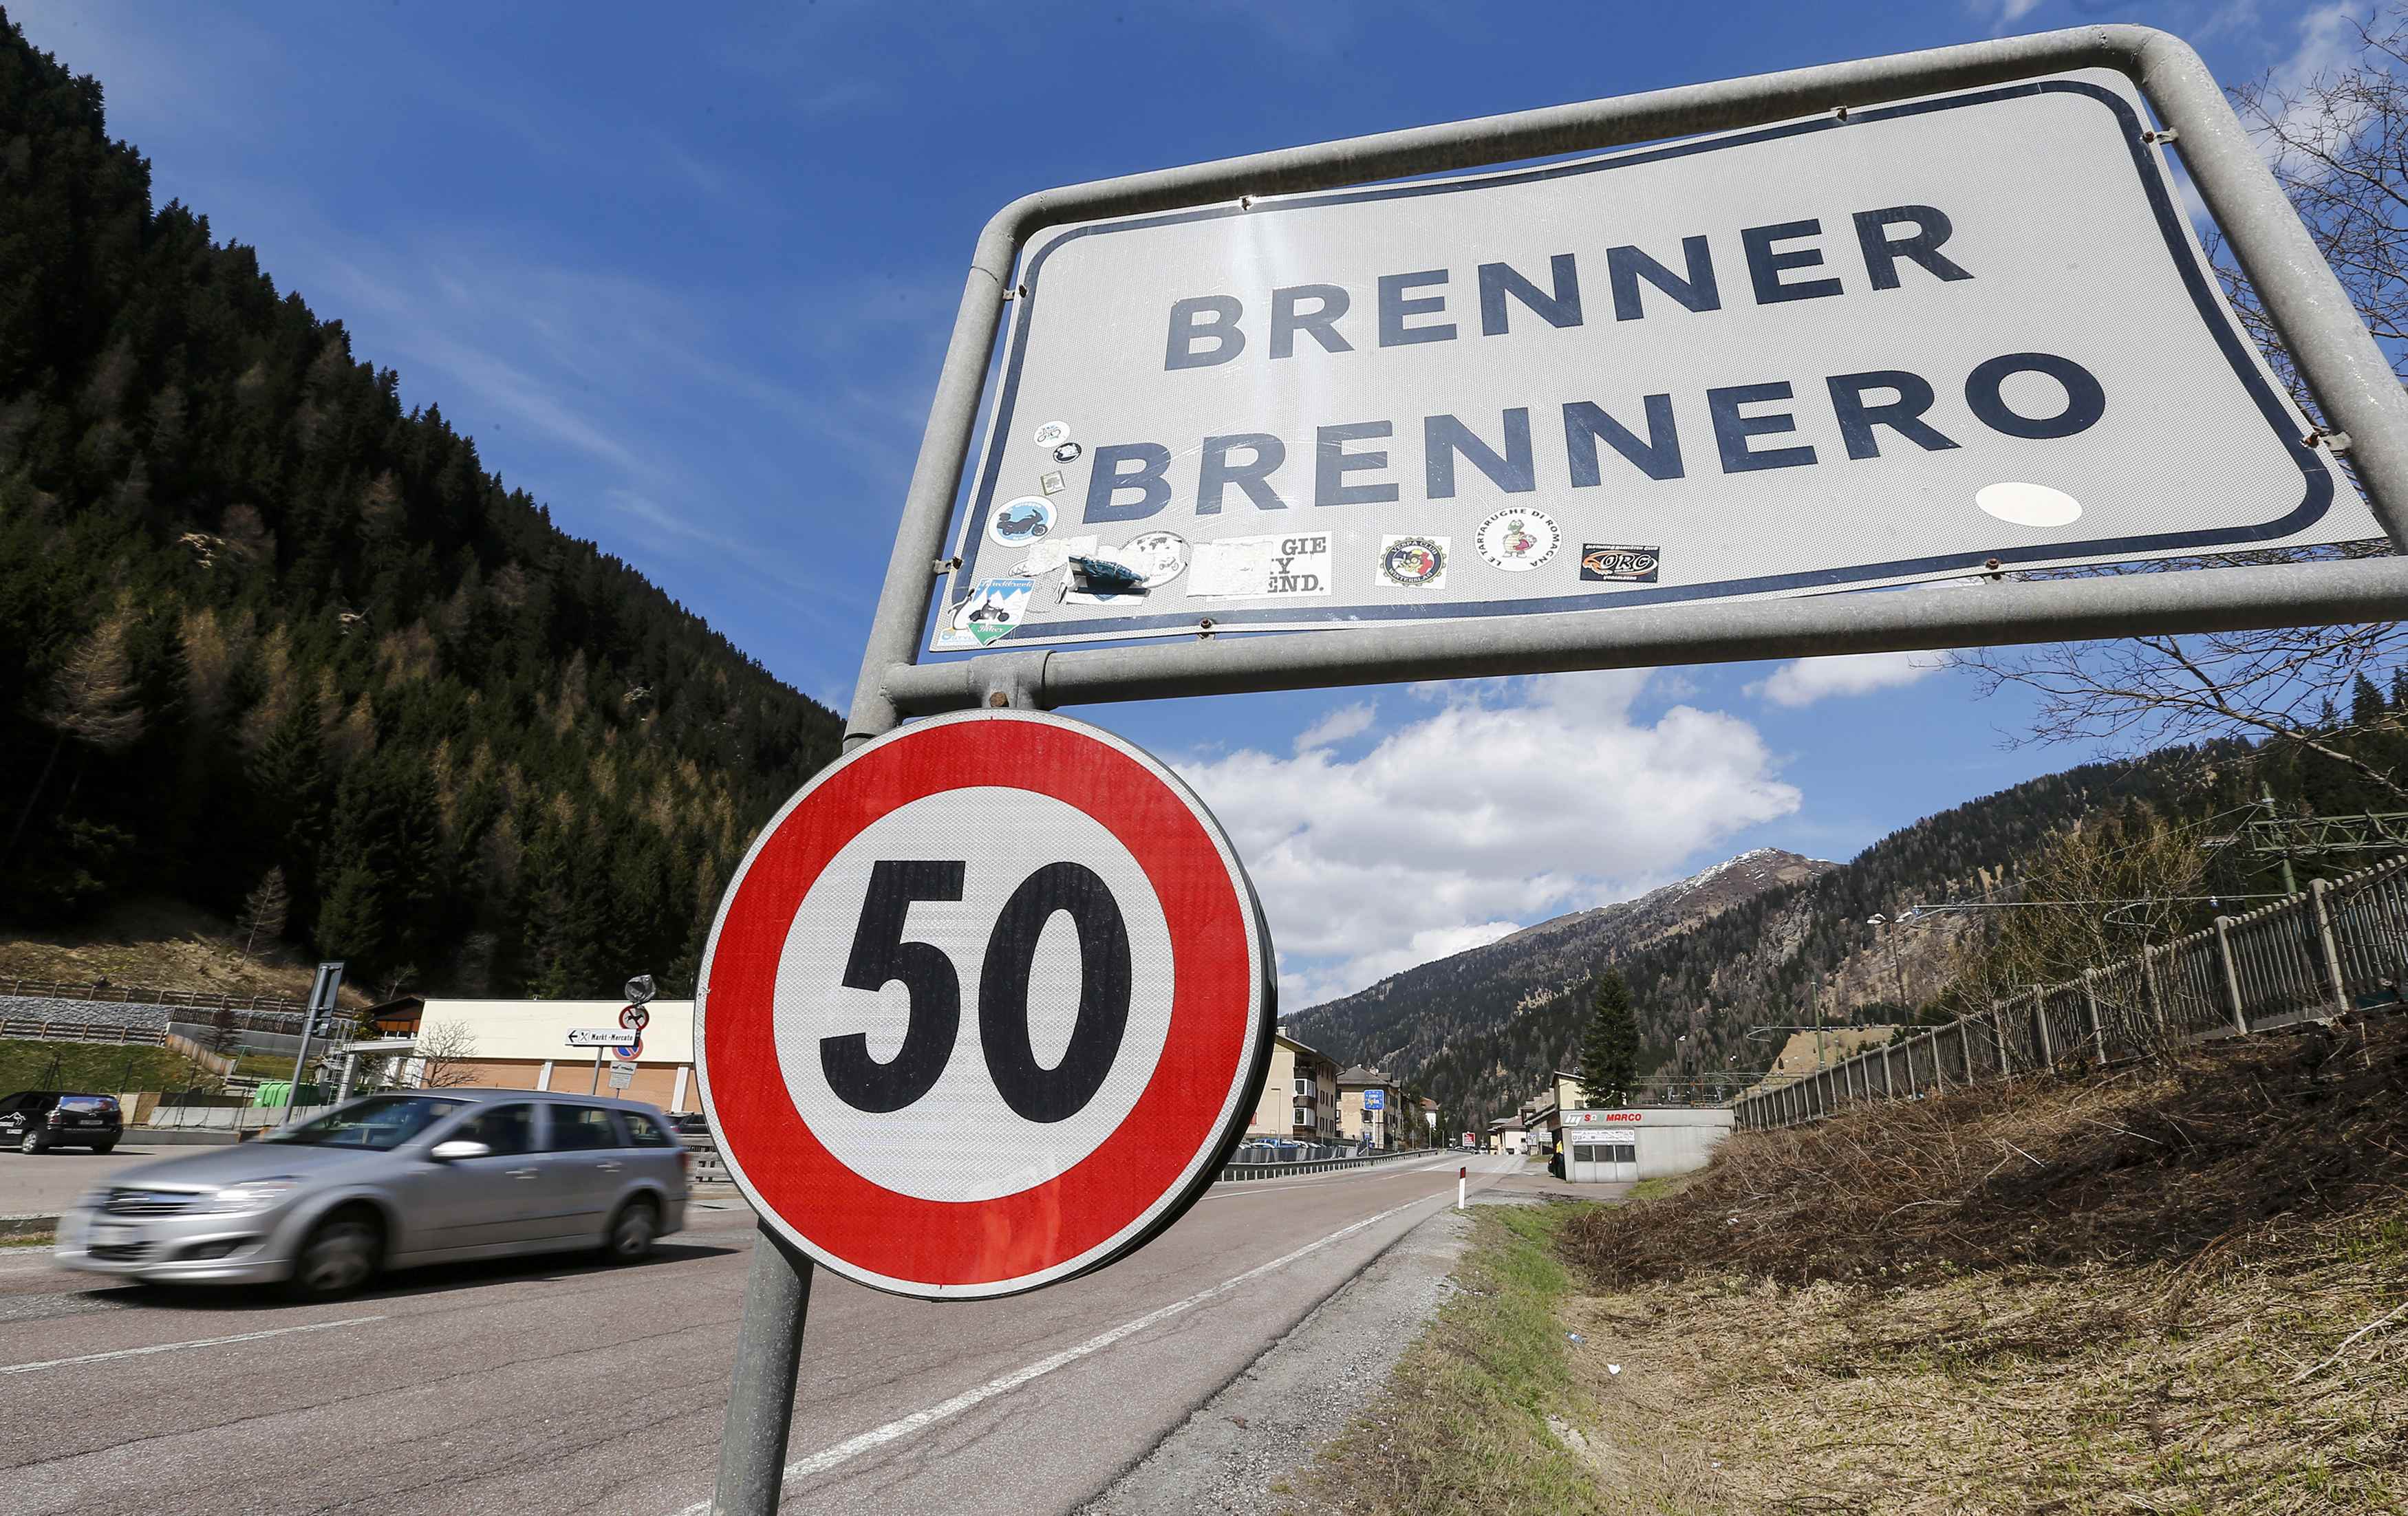 Η Αυστρία απειλεί την Ιταλία ότι θα κλείσει τα σύνορα στο Μπρένερ αν υπάρξει ανεξέλεγχτη ροή μεταναστών